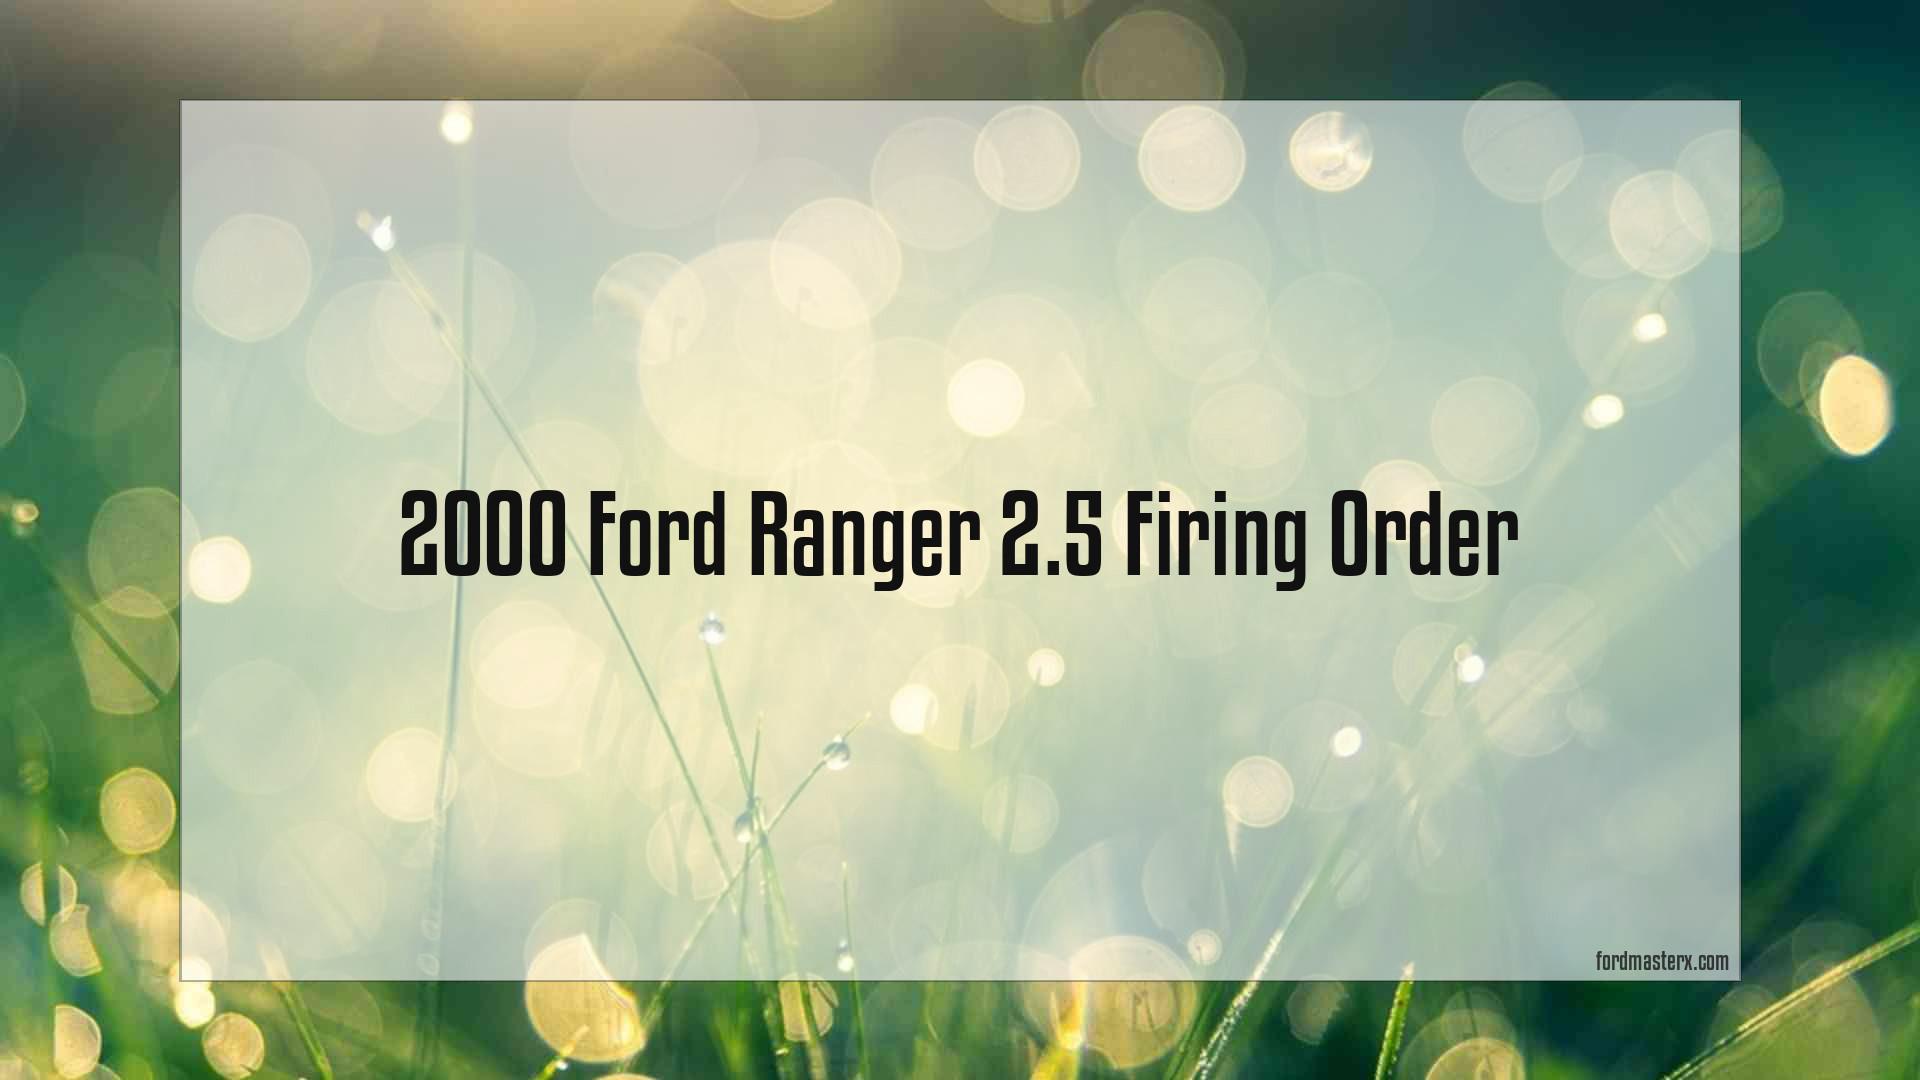 2000 ford ranger 25 firing order